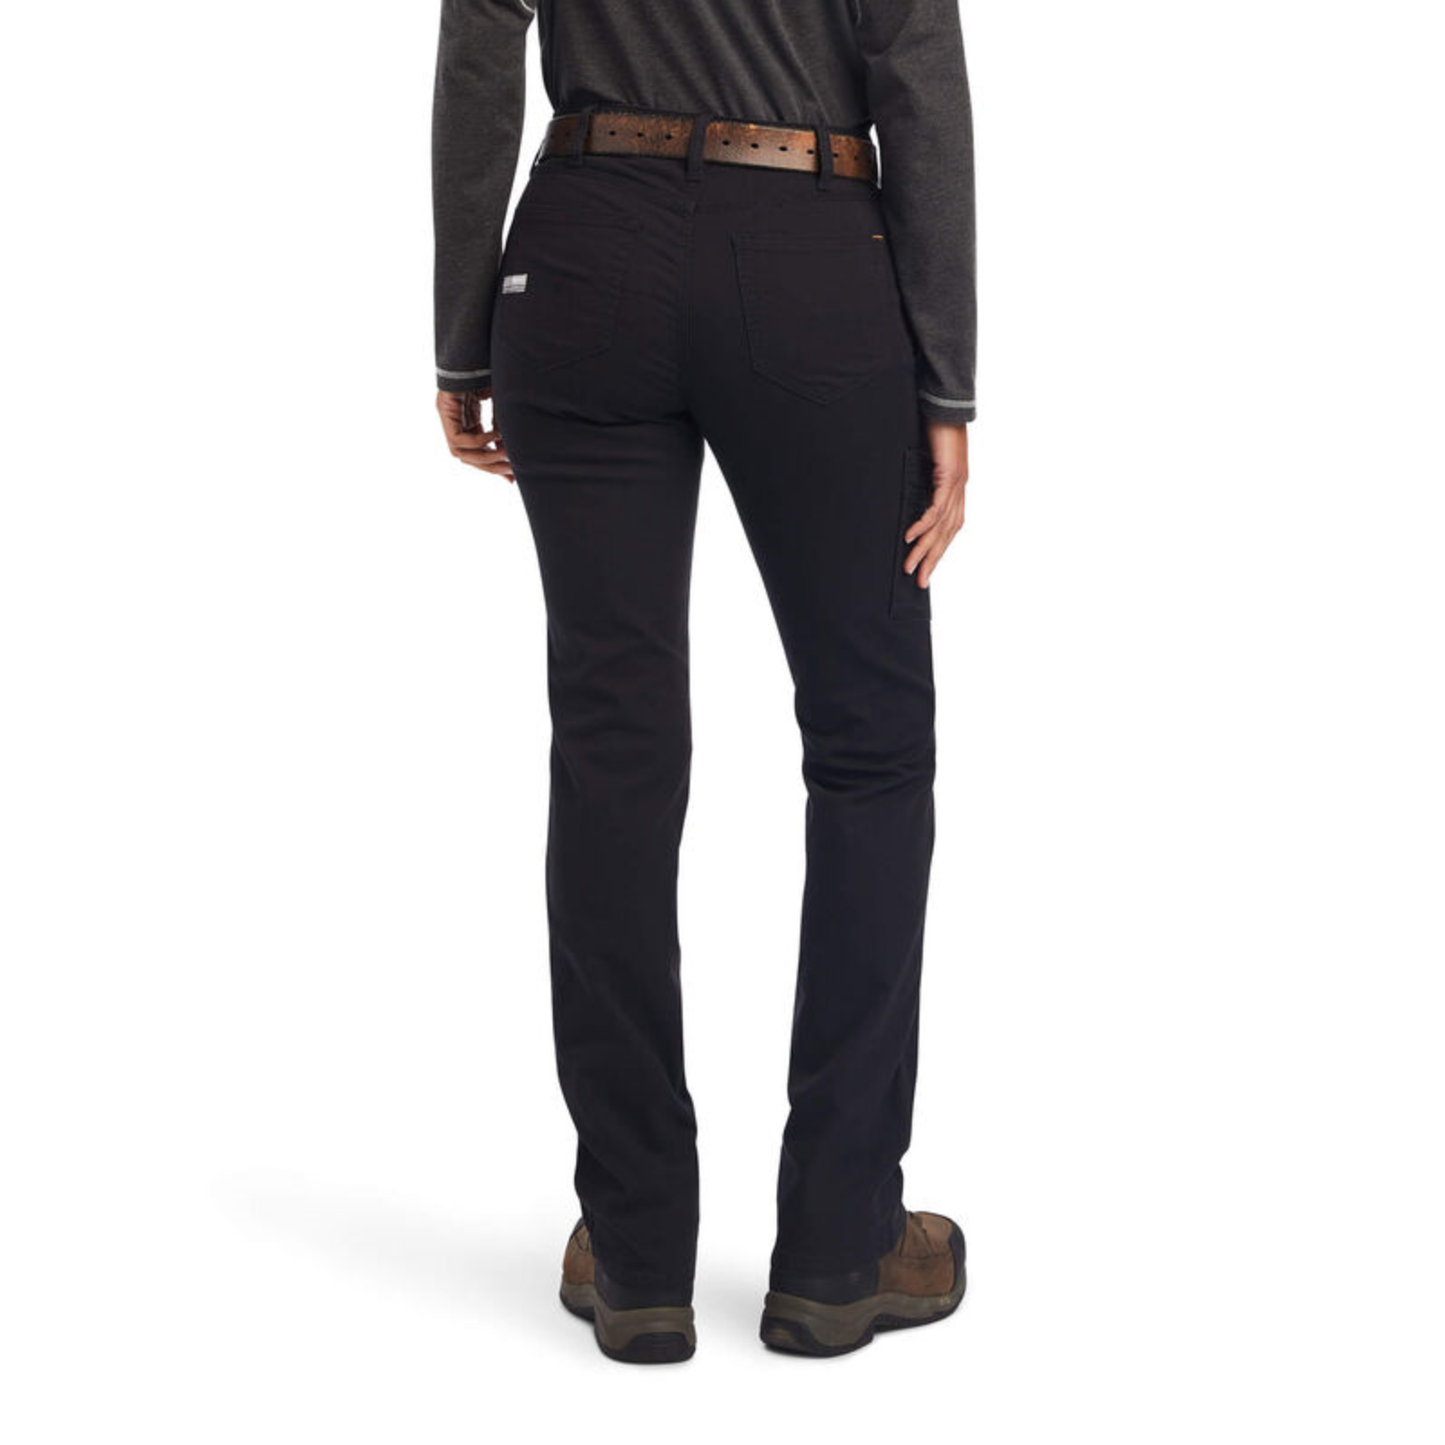 Ariat® Ladies Rebar DuraStretch™ Made Tough Black Work Pants